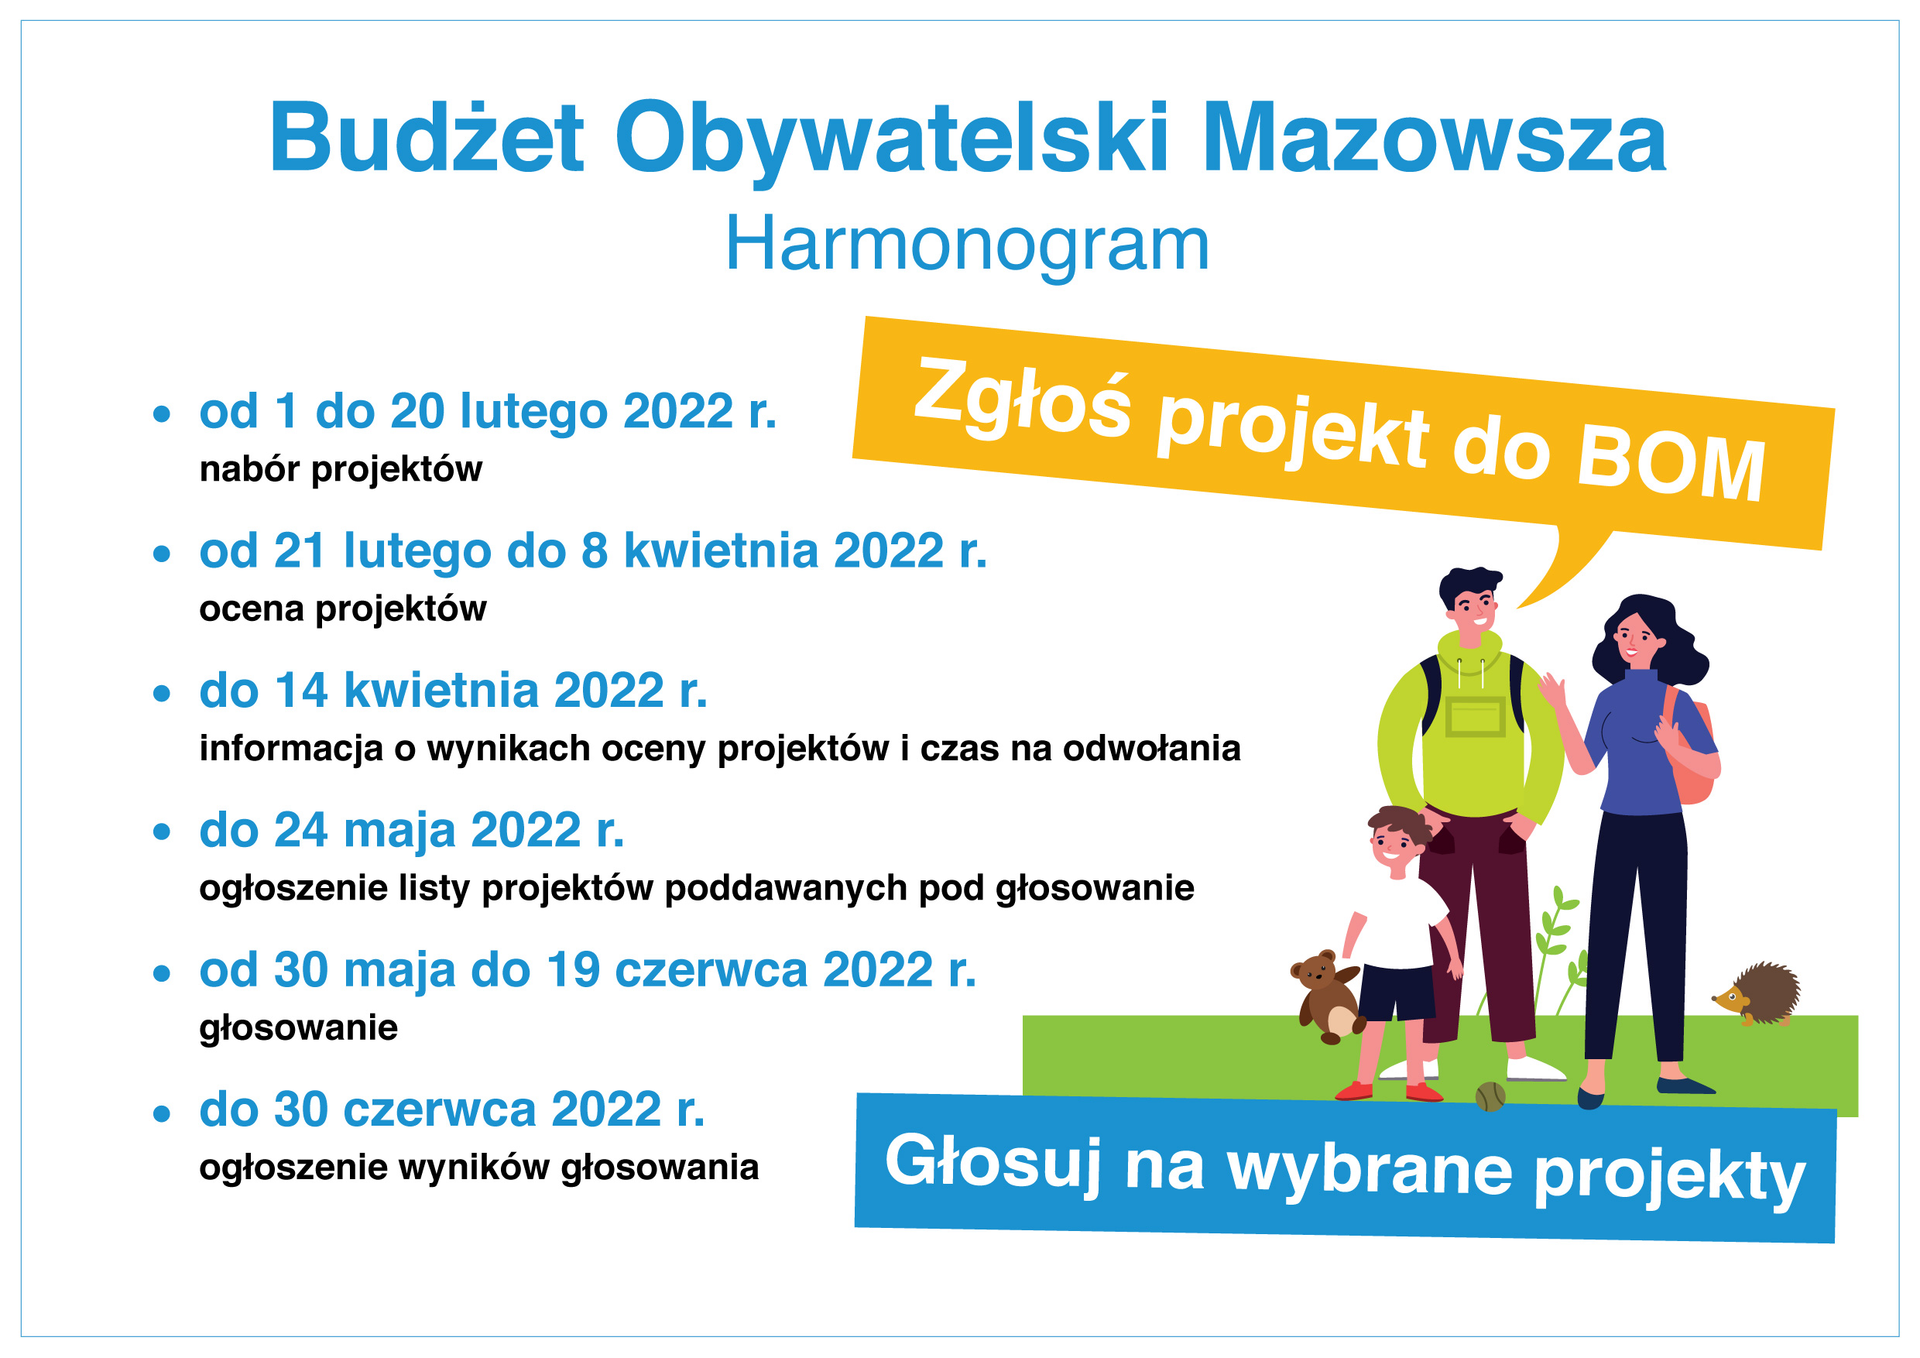 Harmonogram Budżetu Obywatelskiego Mazowsza